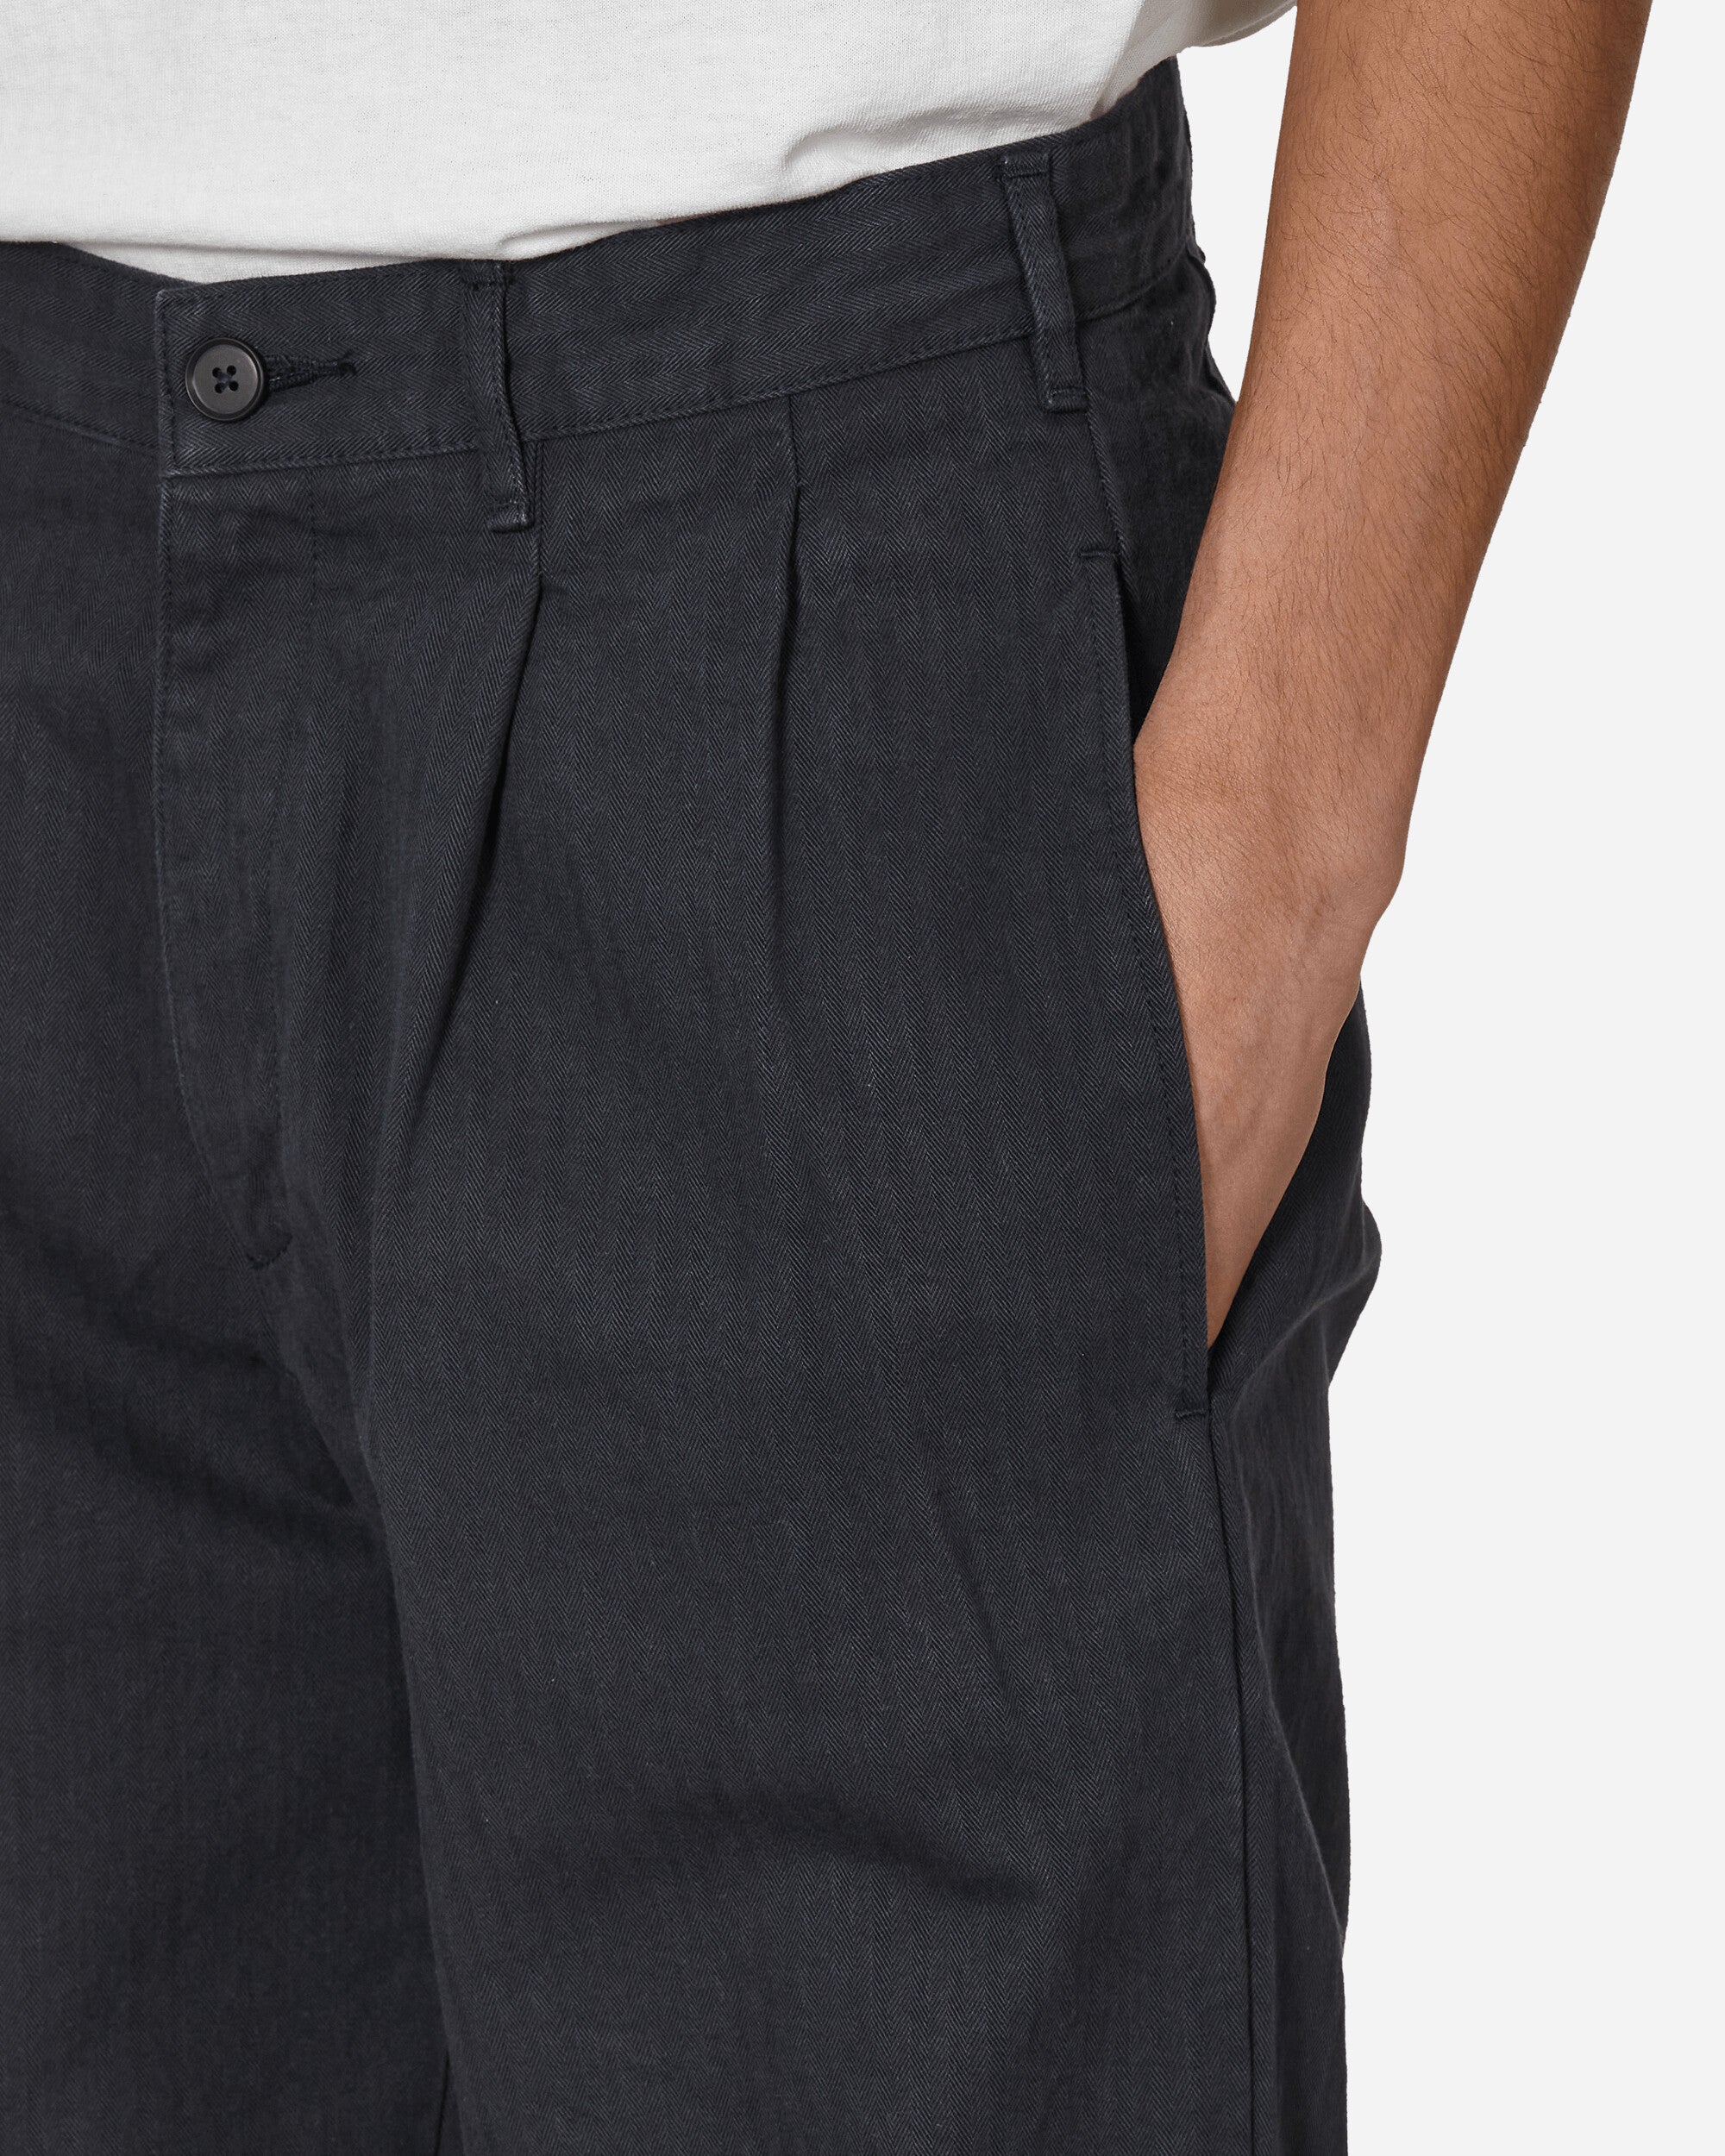 Noah Double-Pleat Herringbone Pant Navy Pants Trousers P2NOAH NVY